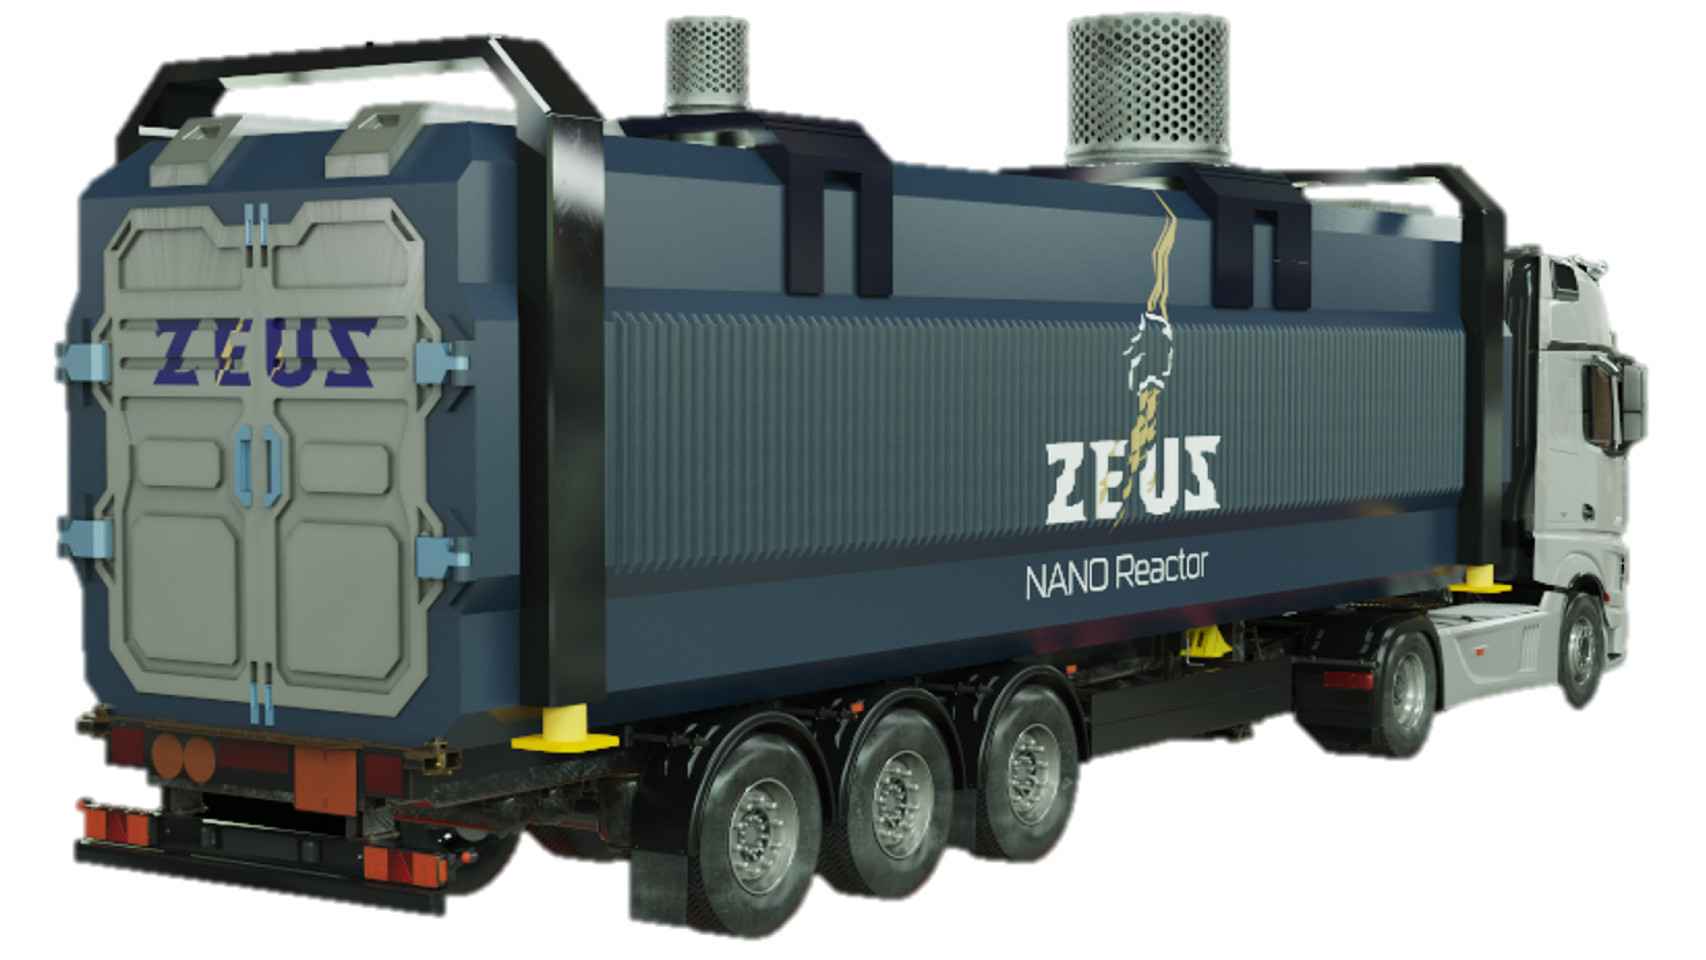 El diseño del microrreactor nuclear Zeus en un camión